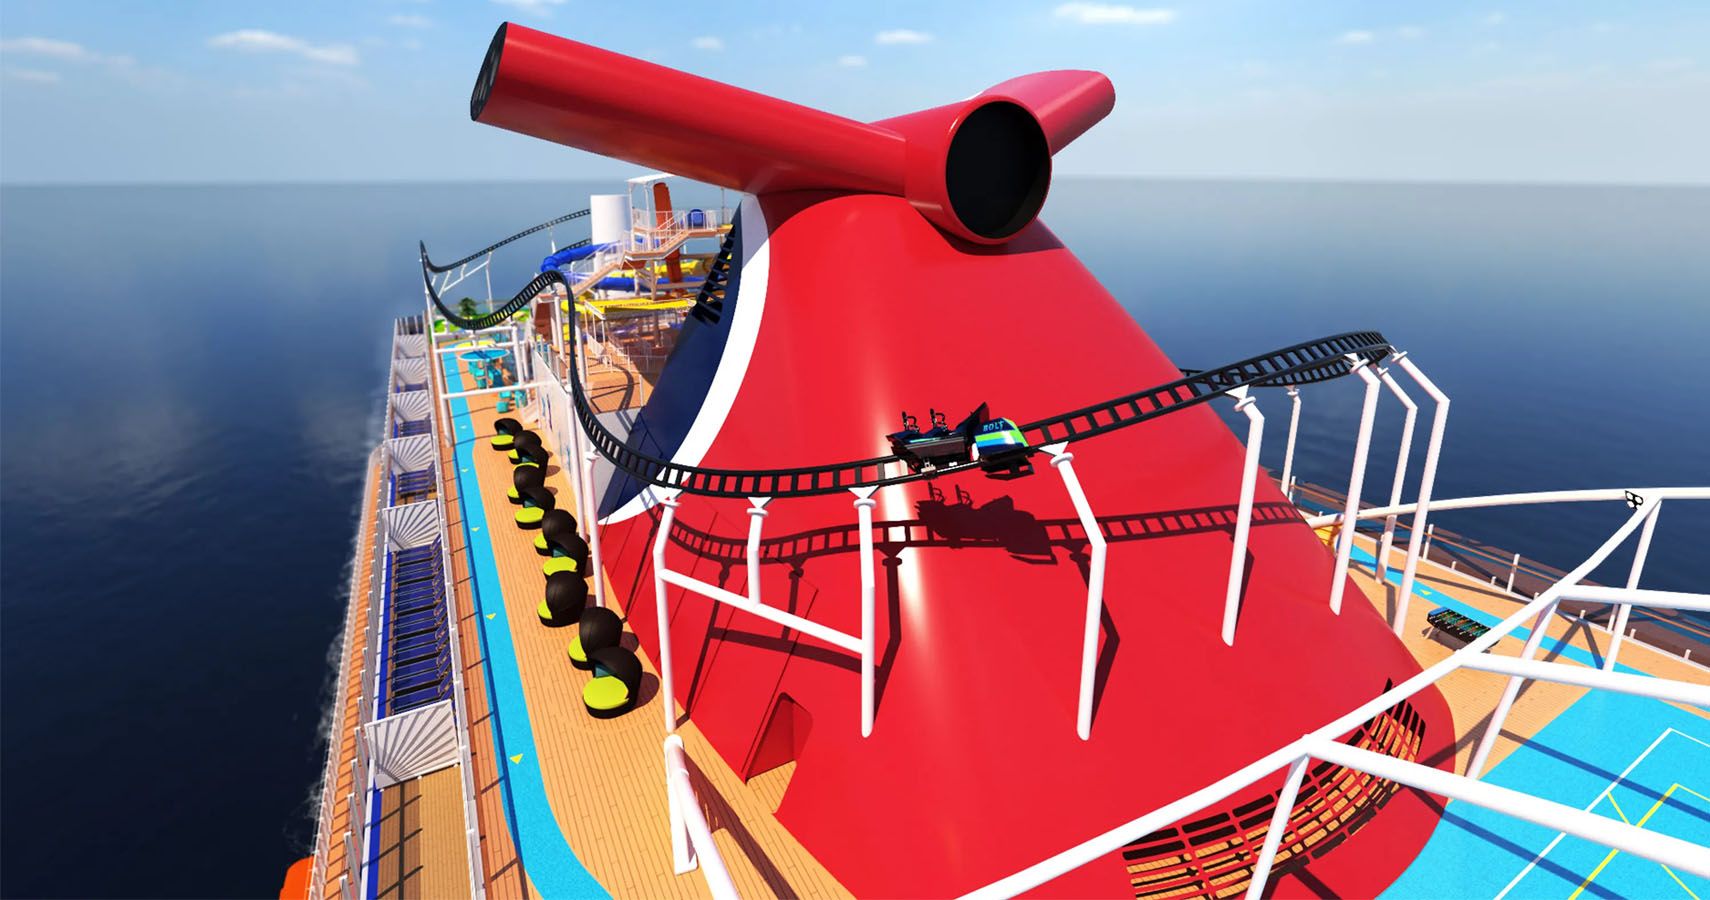 Carnival Cruise Ship contara com montanha russa uma inovacao na